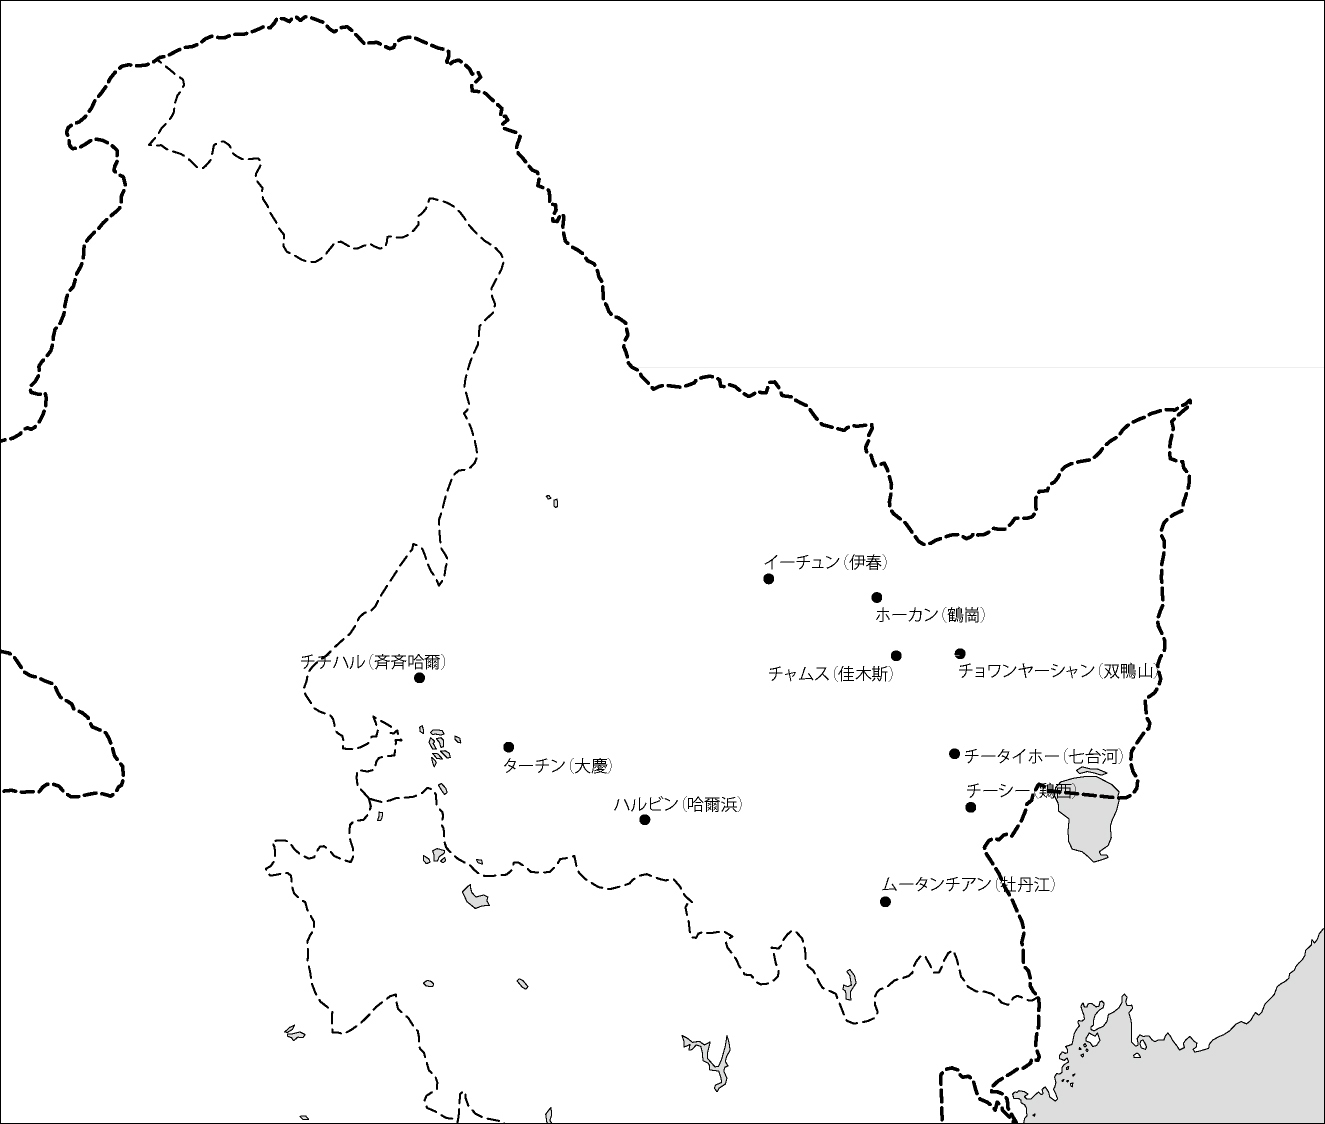 黒竜江省白地図(主な都市あり)のフリーデータの画像